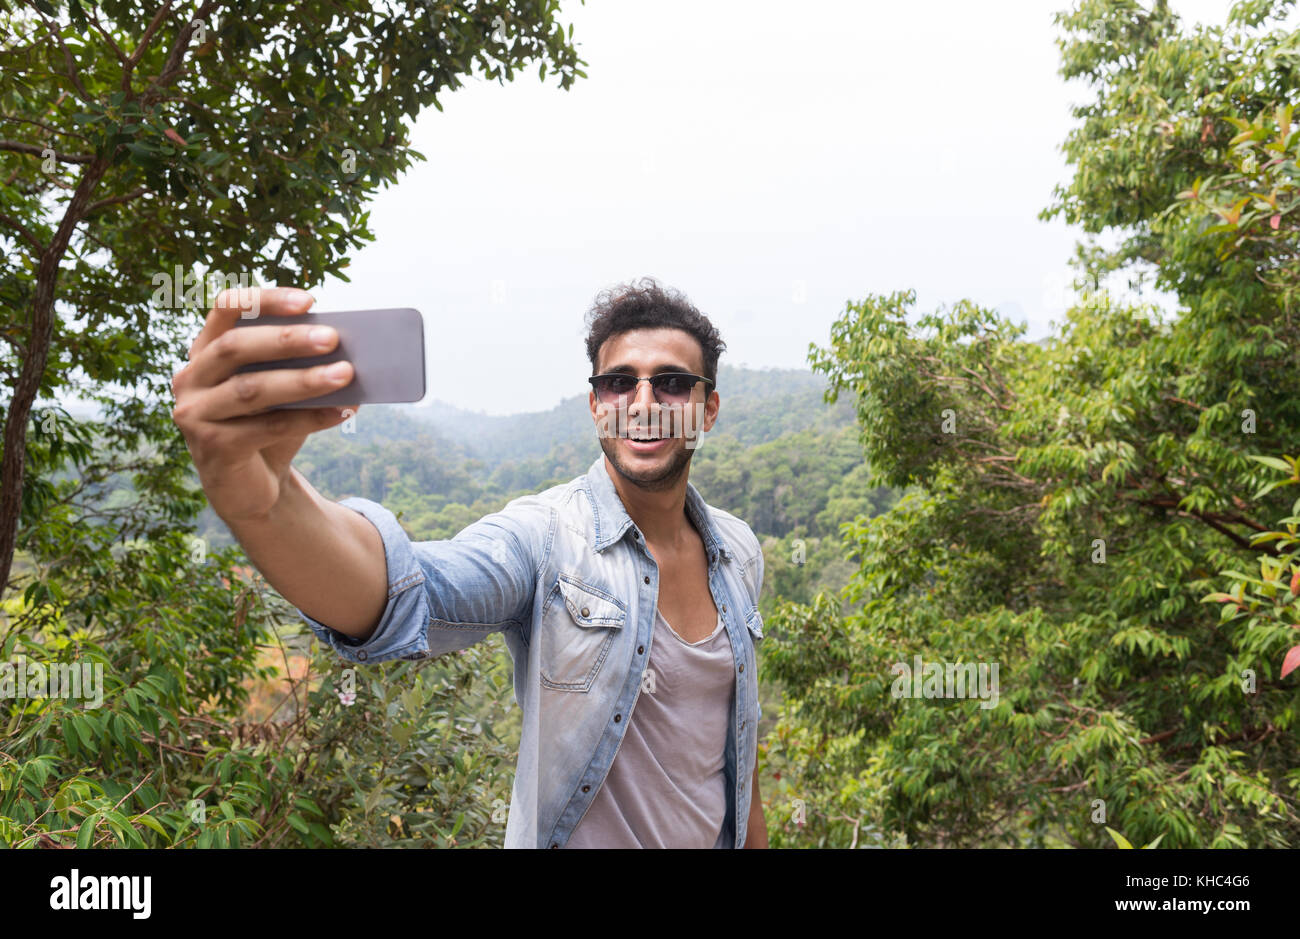 Selfie ideas men | Selfie poses, Guy pictures, Men photoshoot